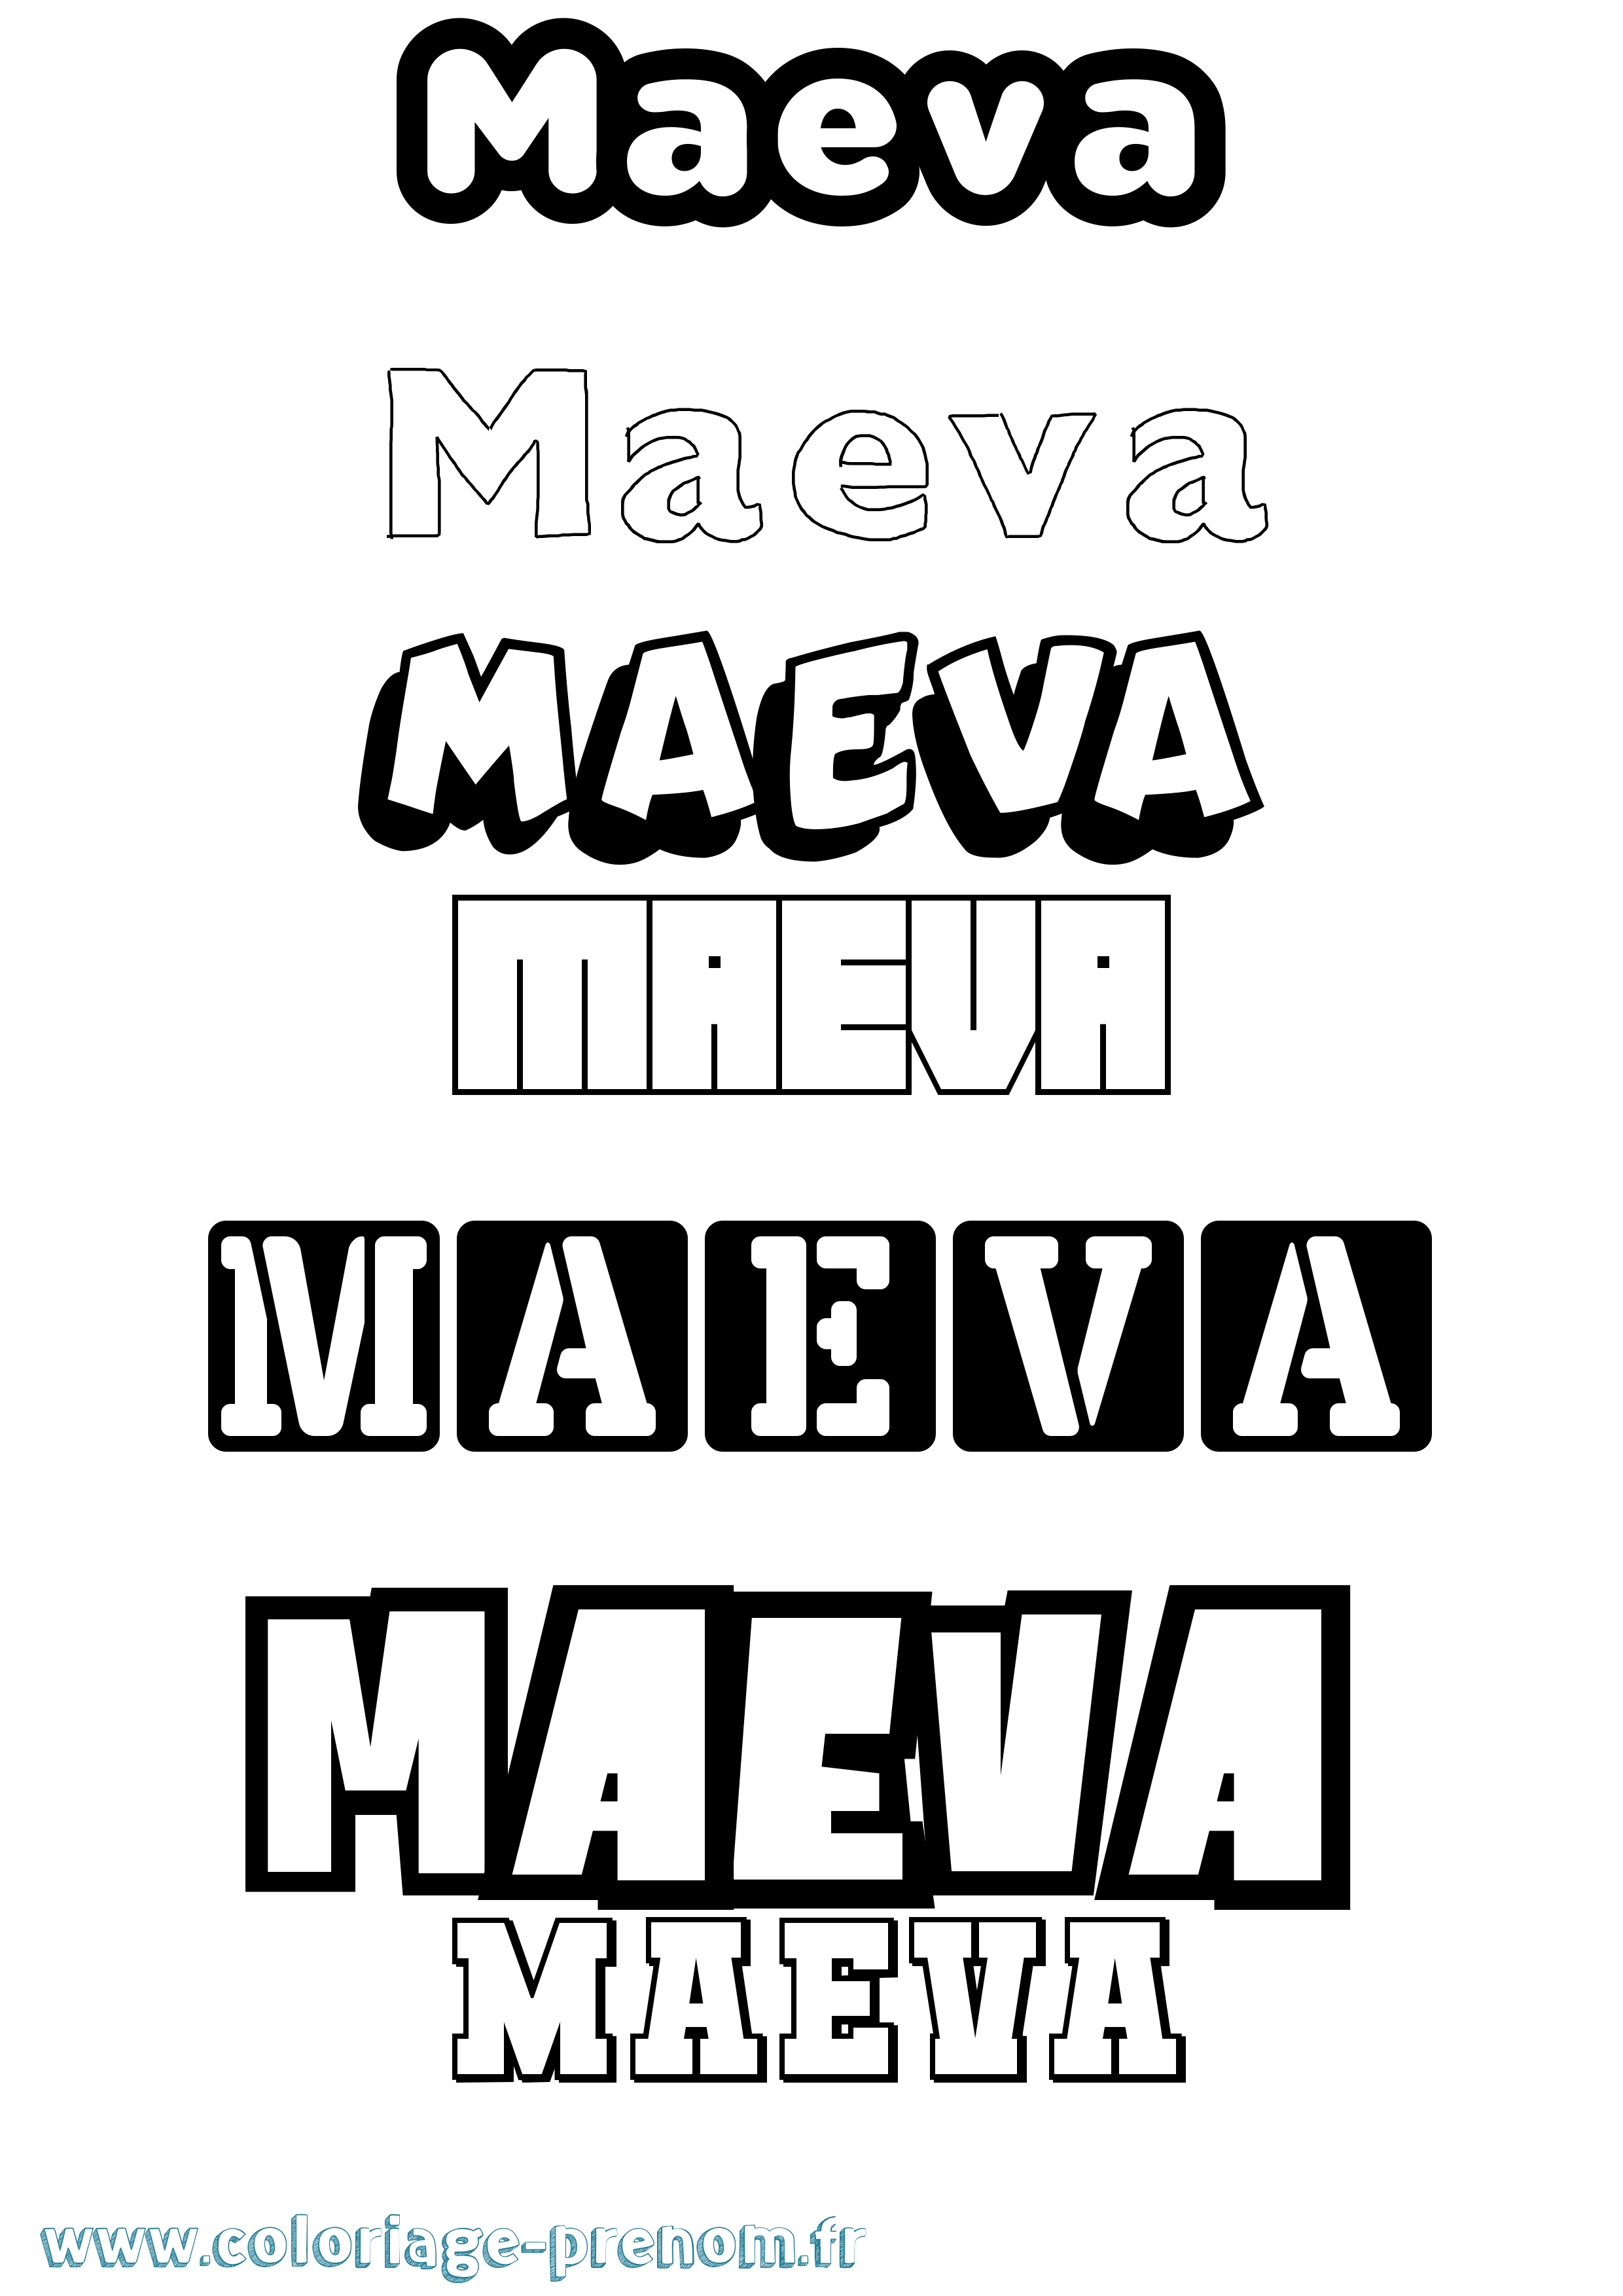 Coloriage prénom Maeva